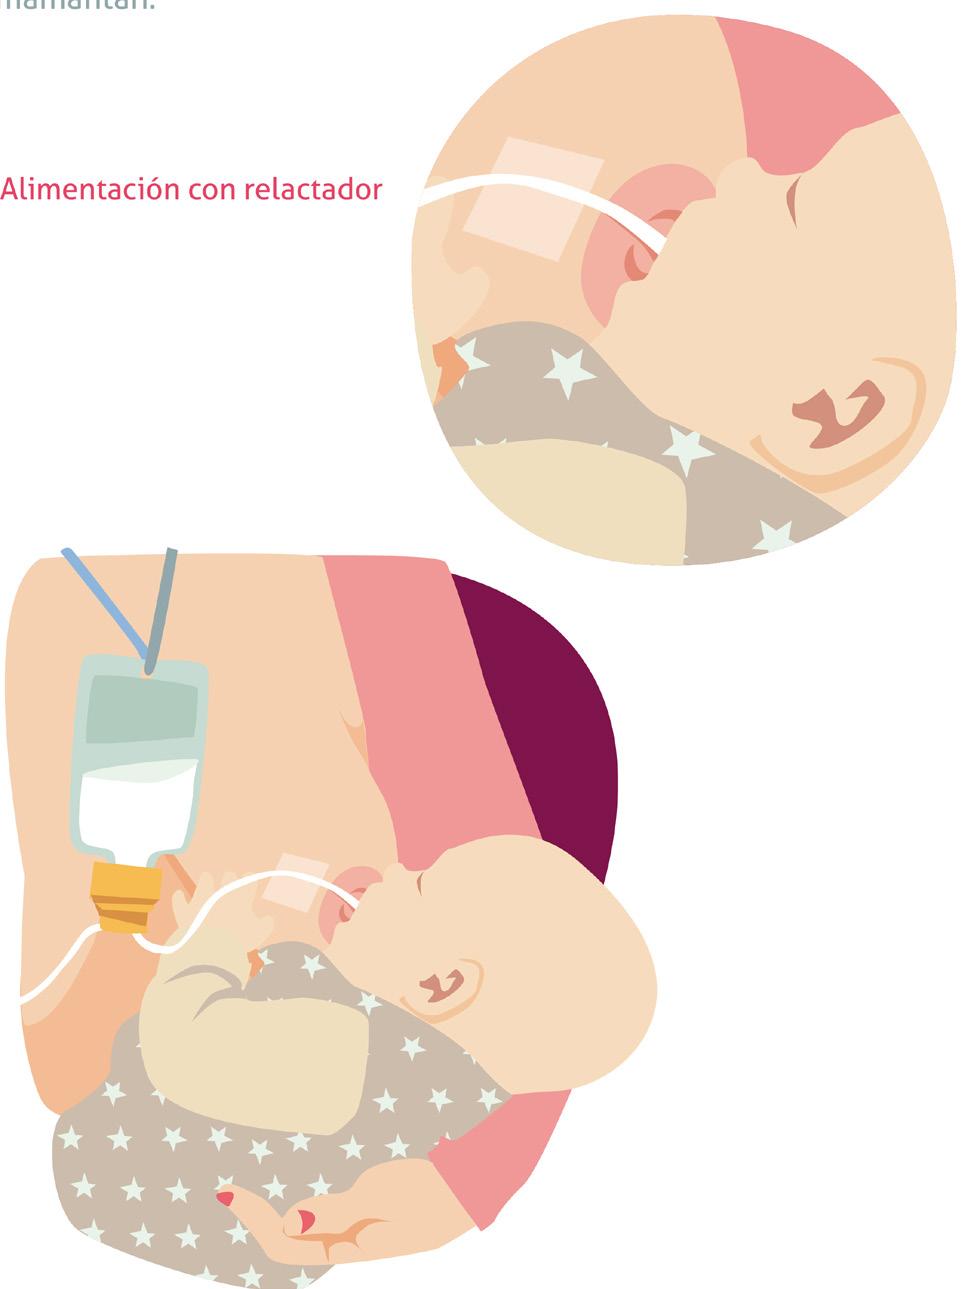 Alimentación con relactador El relactador es un dispositivo que permite que el bebé reciba suplementos de leche materna extraída o leche artificial mientras succiona del pecho.